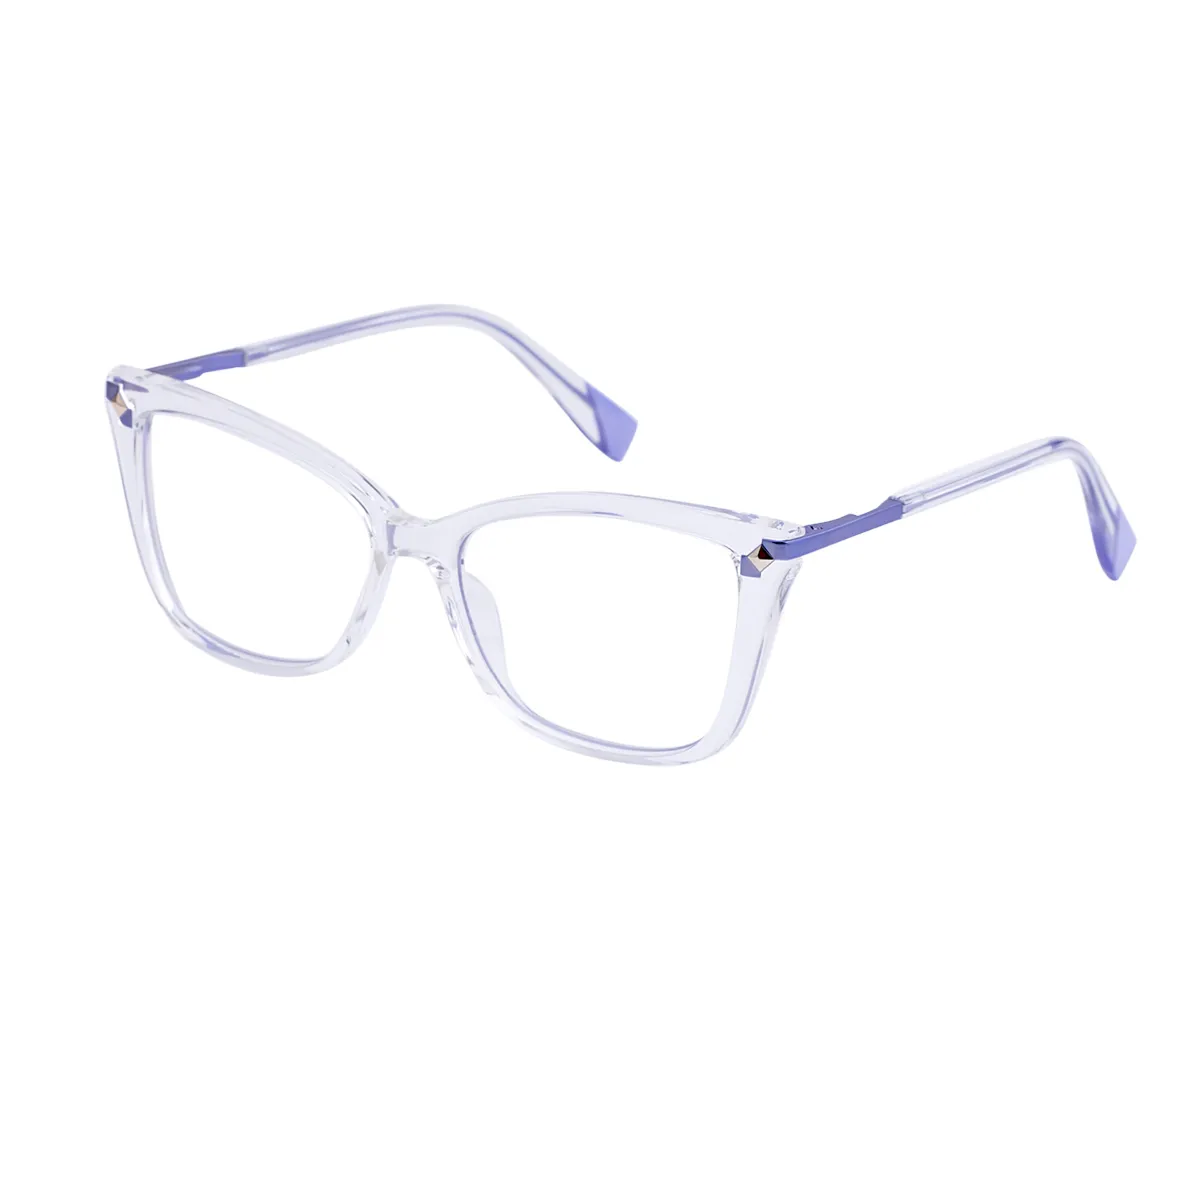 Arabela - Cat-eye Translucent Glasses for Women